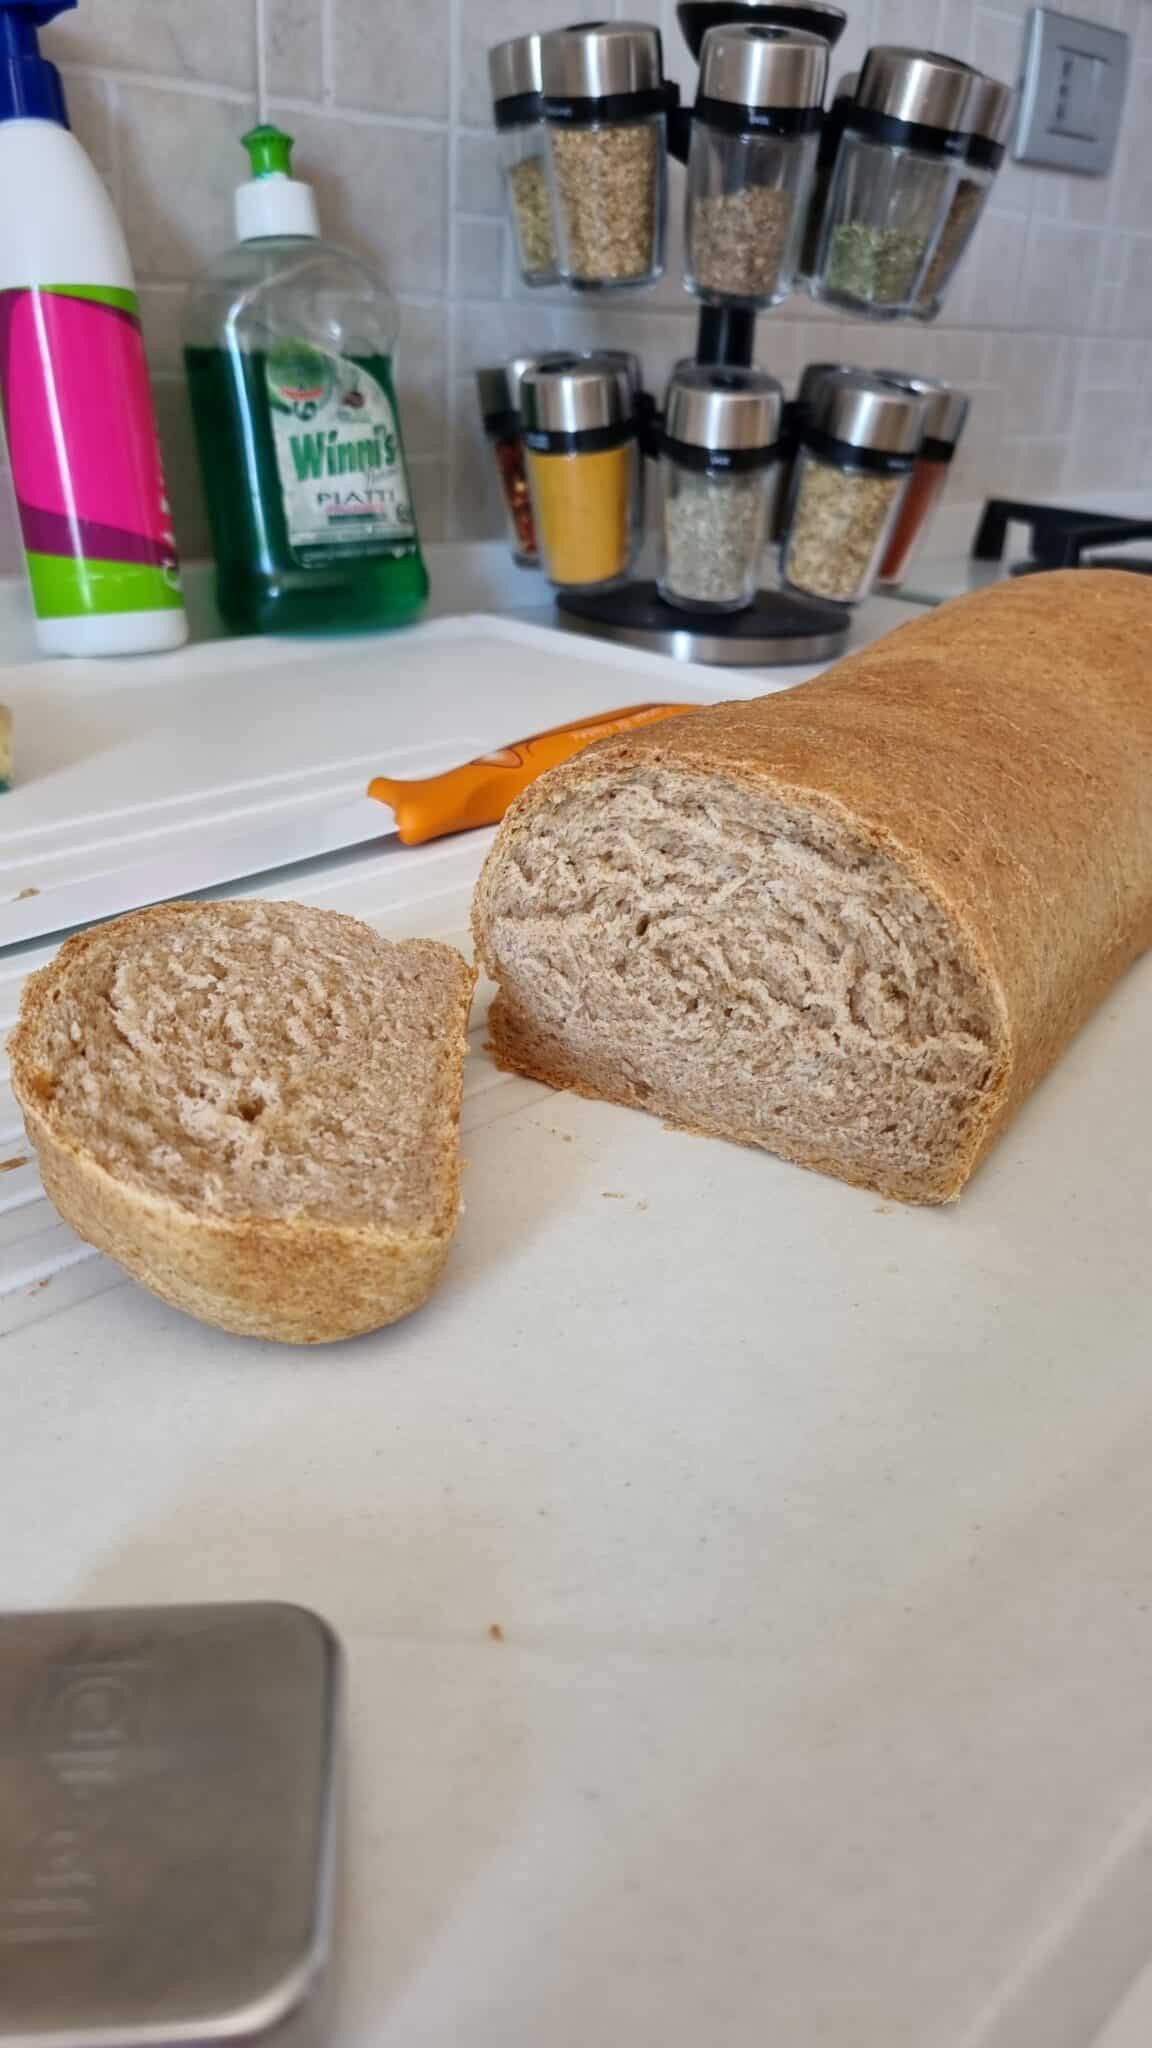 Pane di segale: la ricetta per prepararlo in casa - Non sprecare